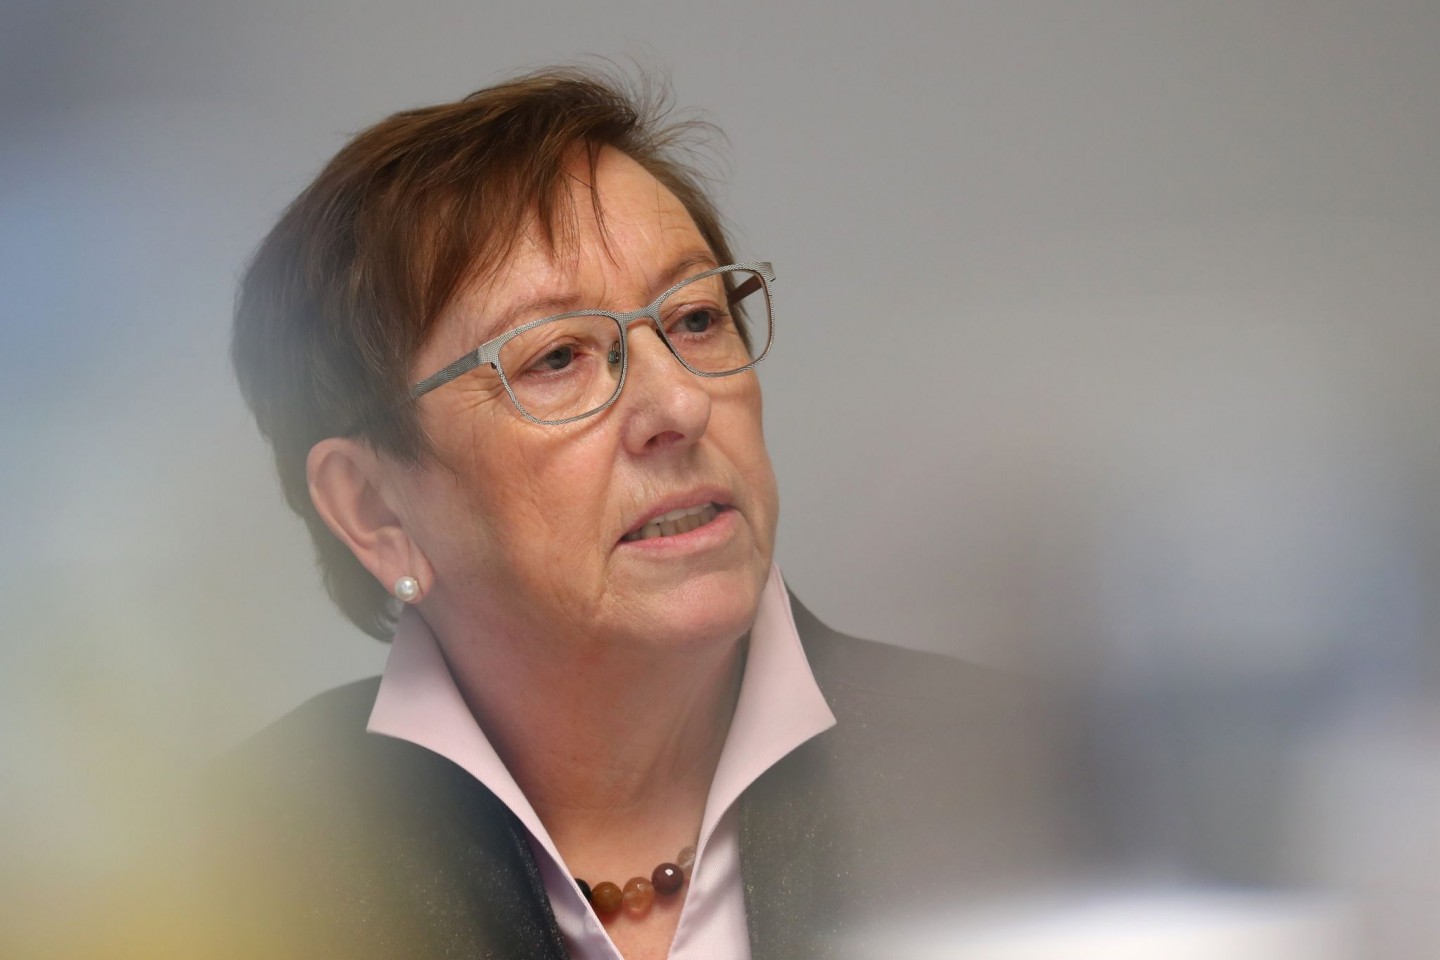 Elisabeth Mette, frühere Präsidentin des Bayerischen Landessozialgerichts, stellt die Ergebnisse der Untersuchung von Missbrauchsfällen in zwei Kinderheimen der Diözese Augsburg vor.